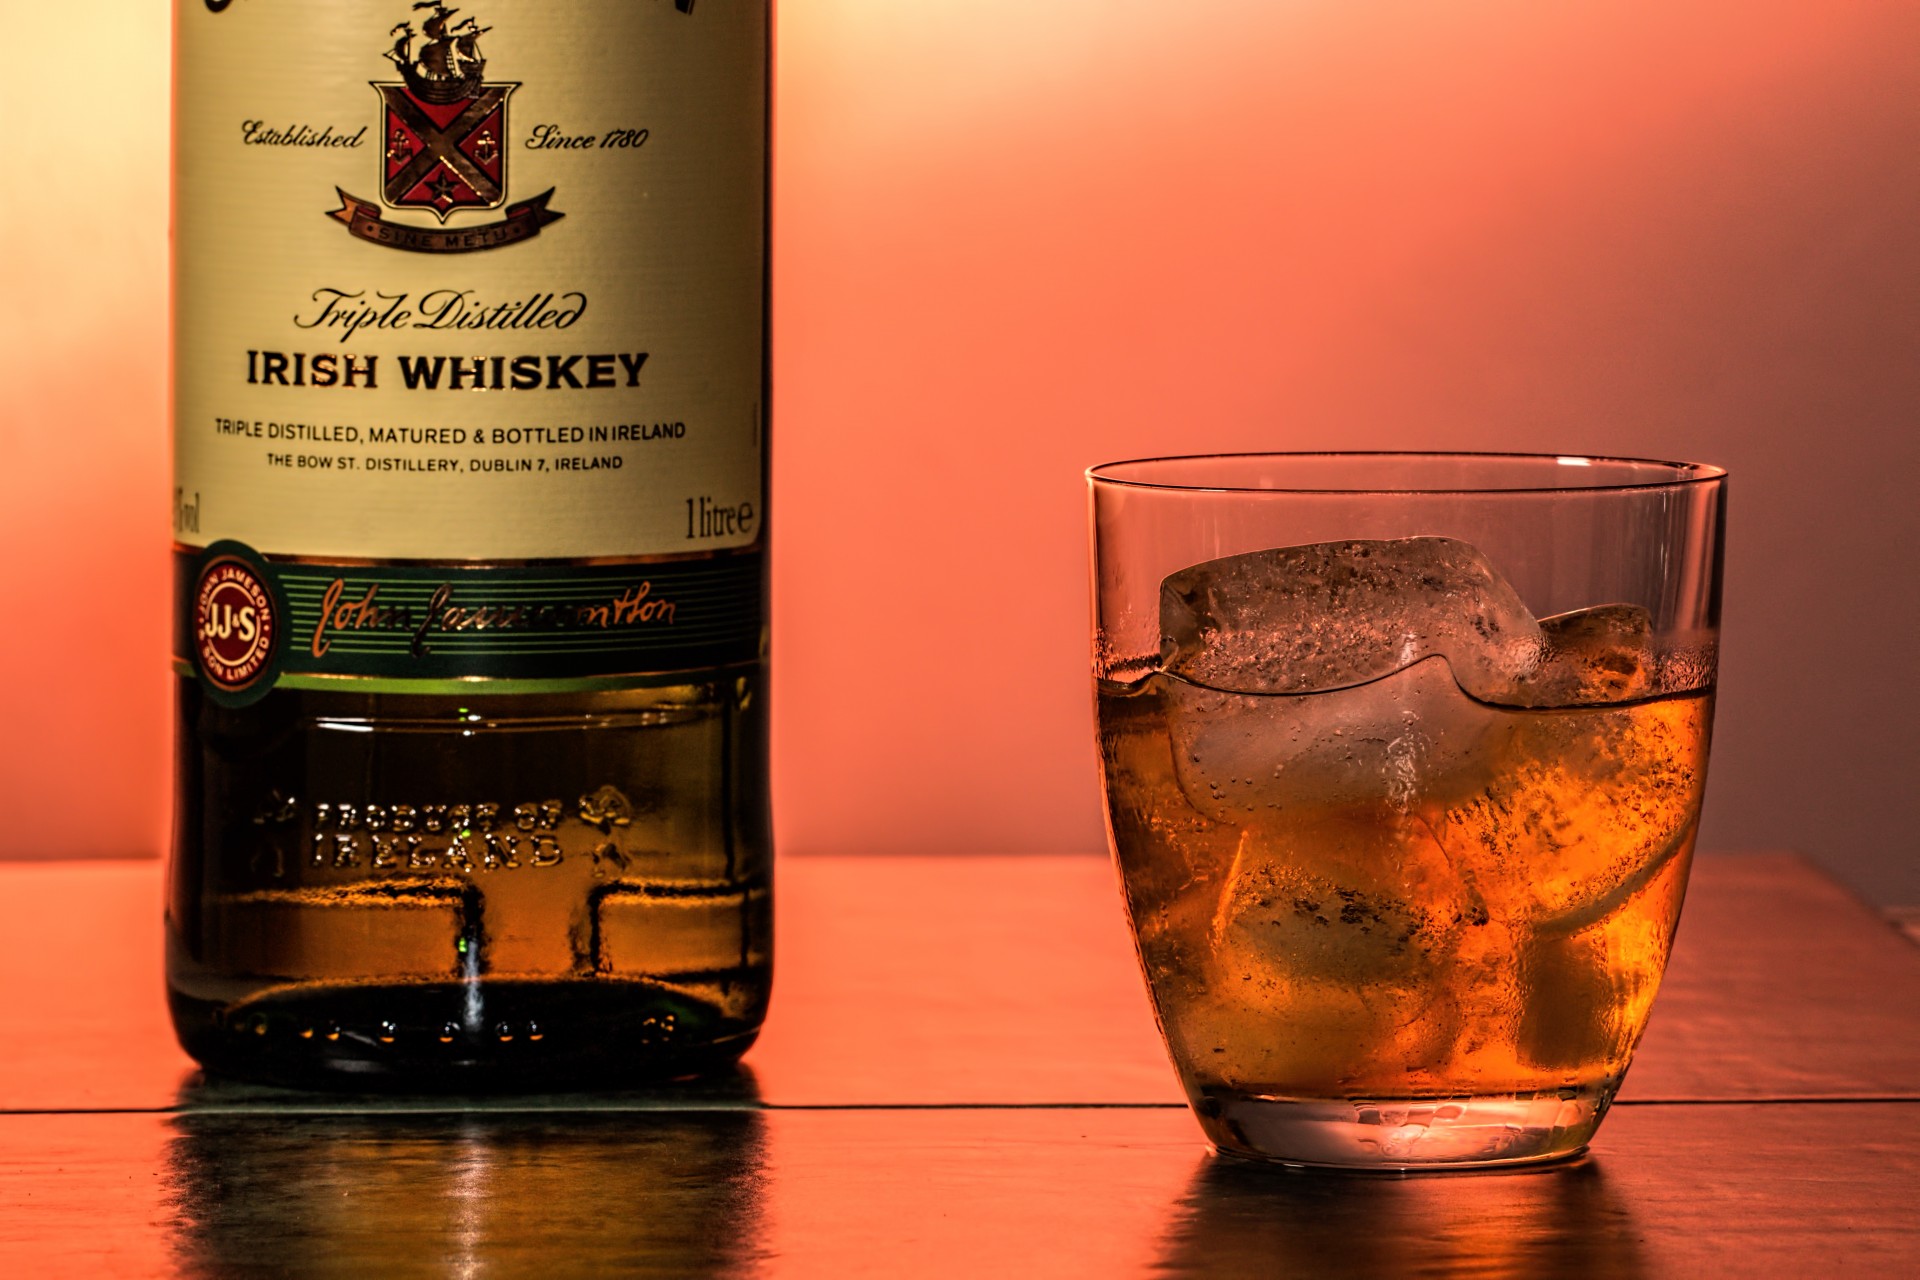 Tumbler of Irish Whiskey with bottle.